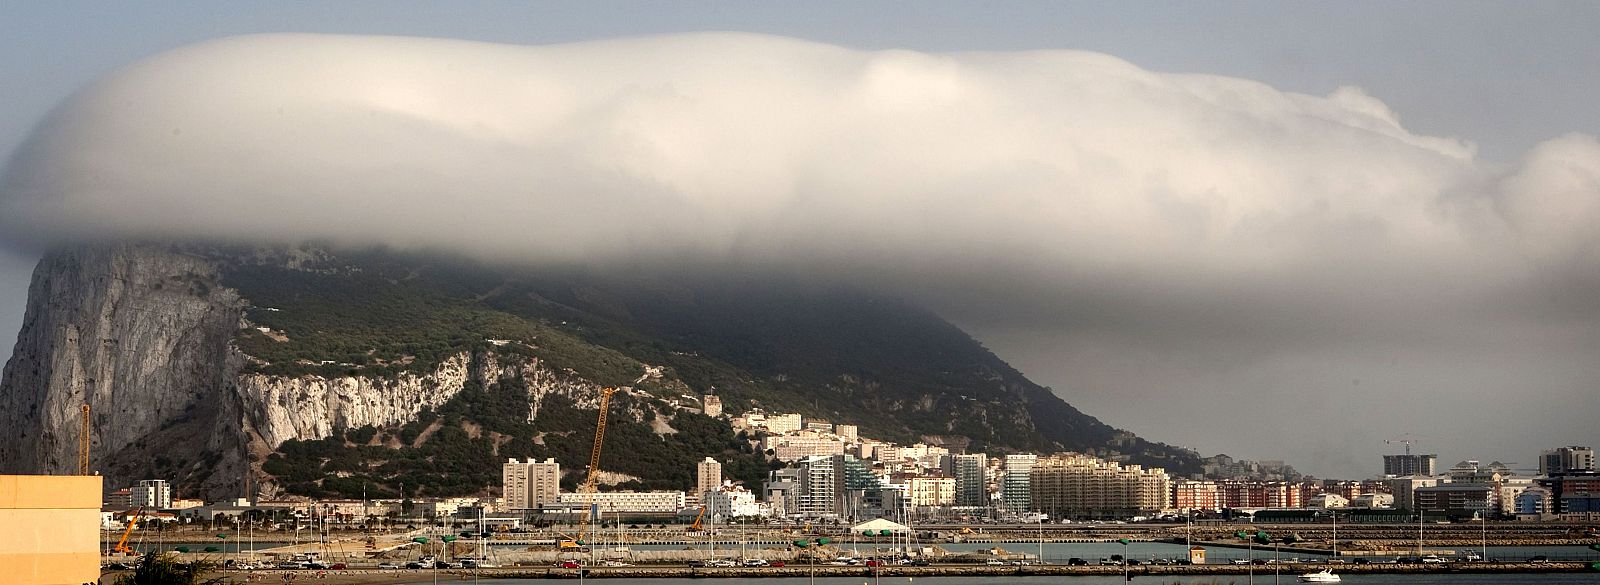 Vista general del peñón de Gibraltar